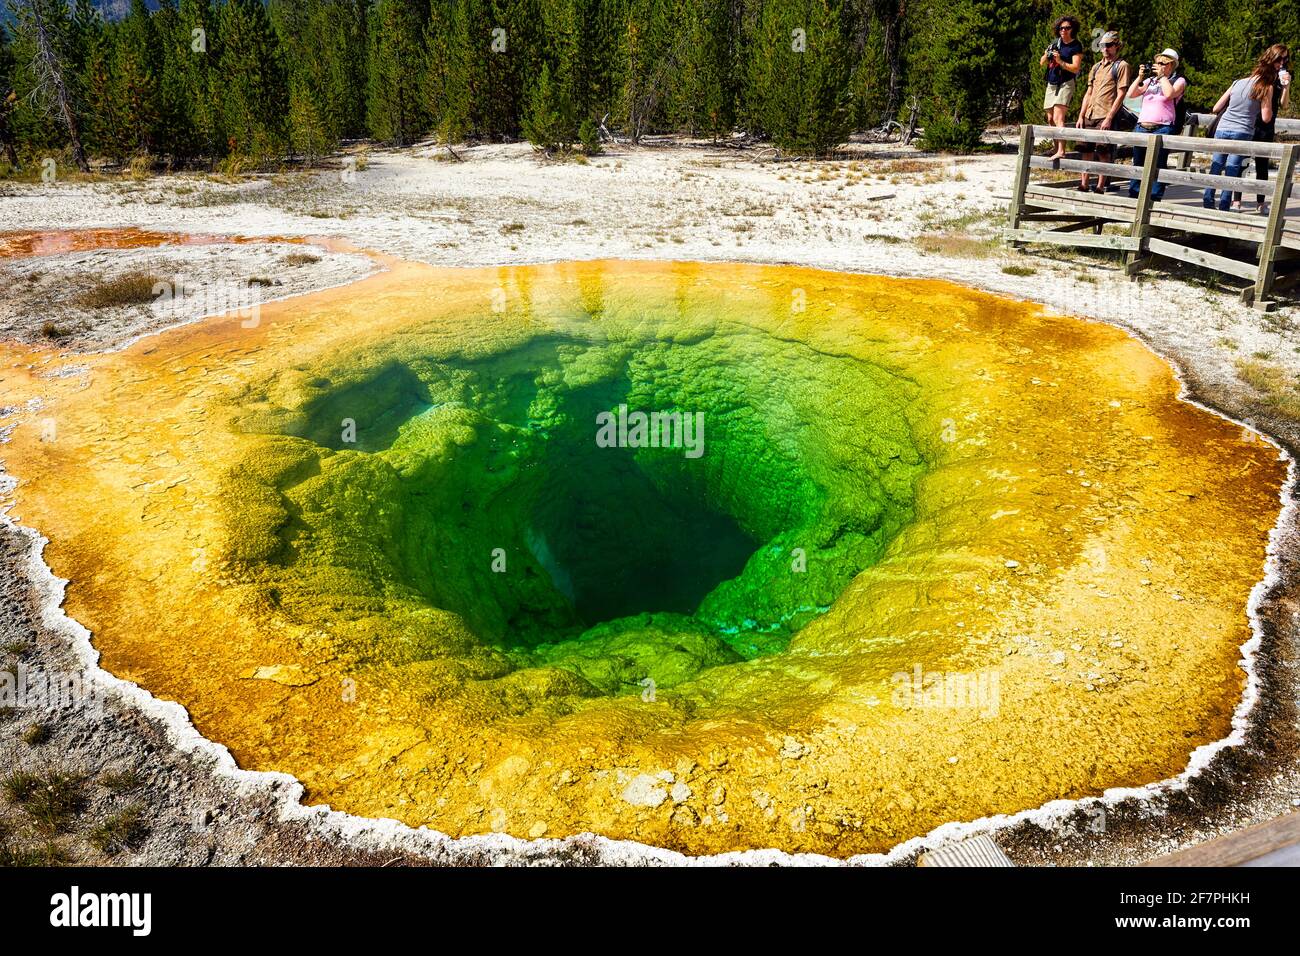 Piscine Morning Glory dans le parc national de Yellowstone. Wyoming. ÉTATS-UNIS. Banque D'Images